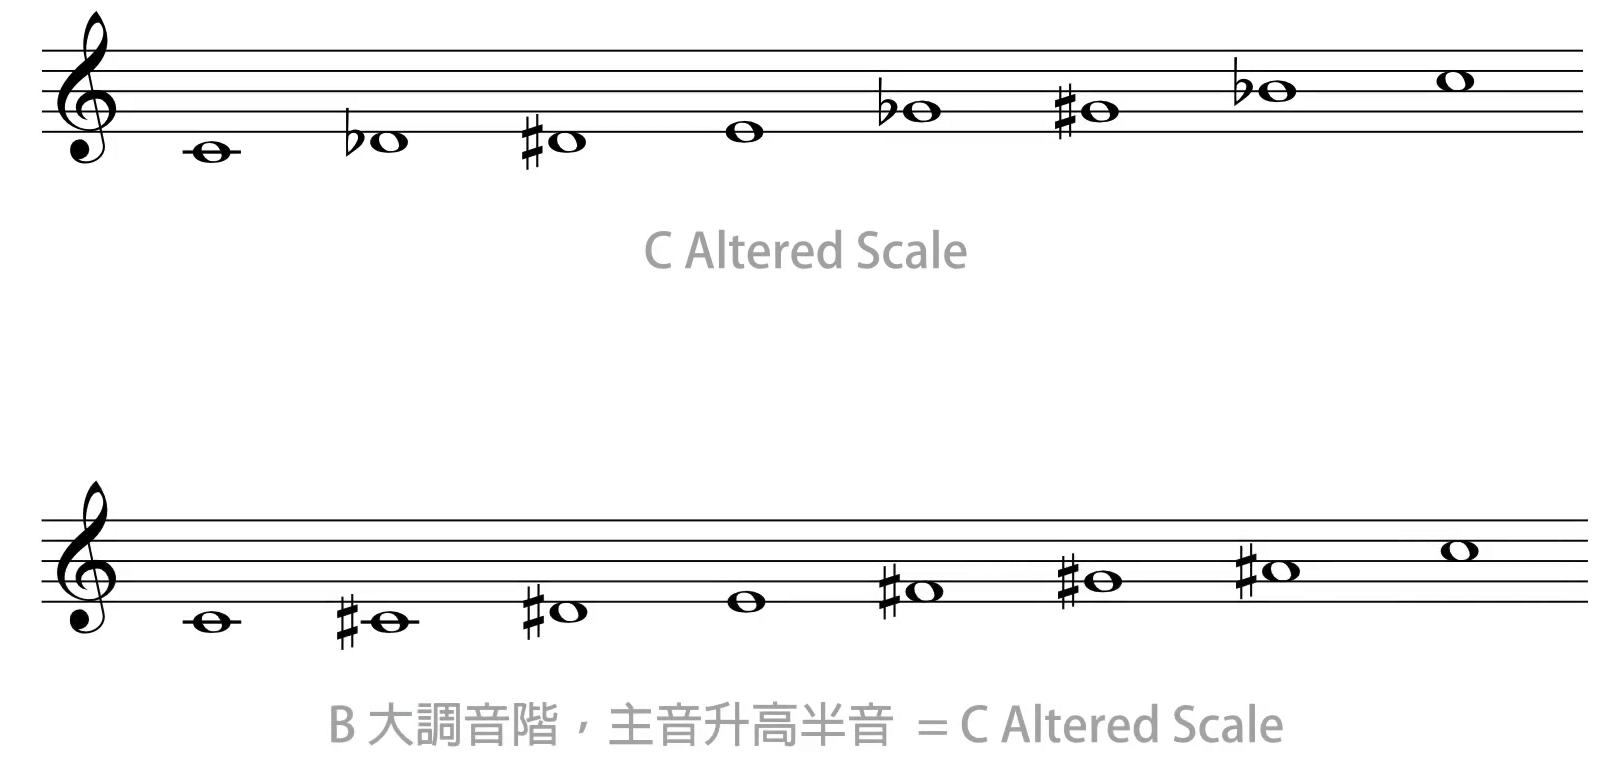 用低半音的大调音阶构建 Altered Scale